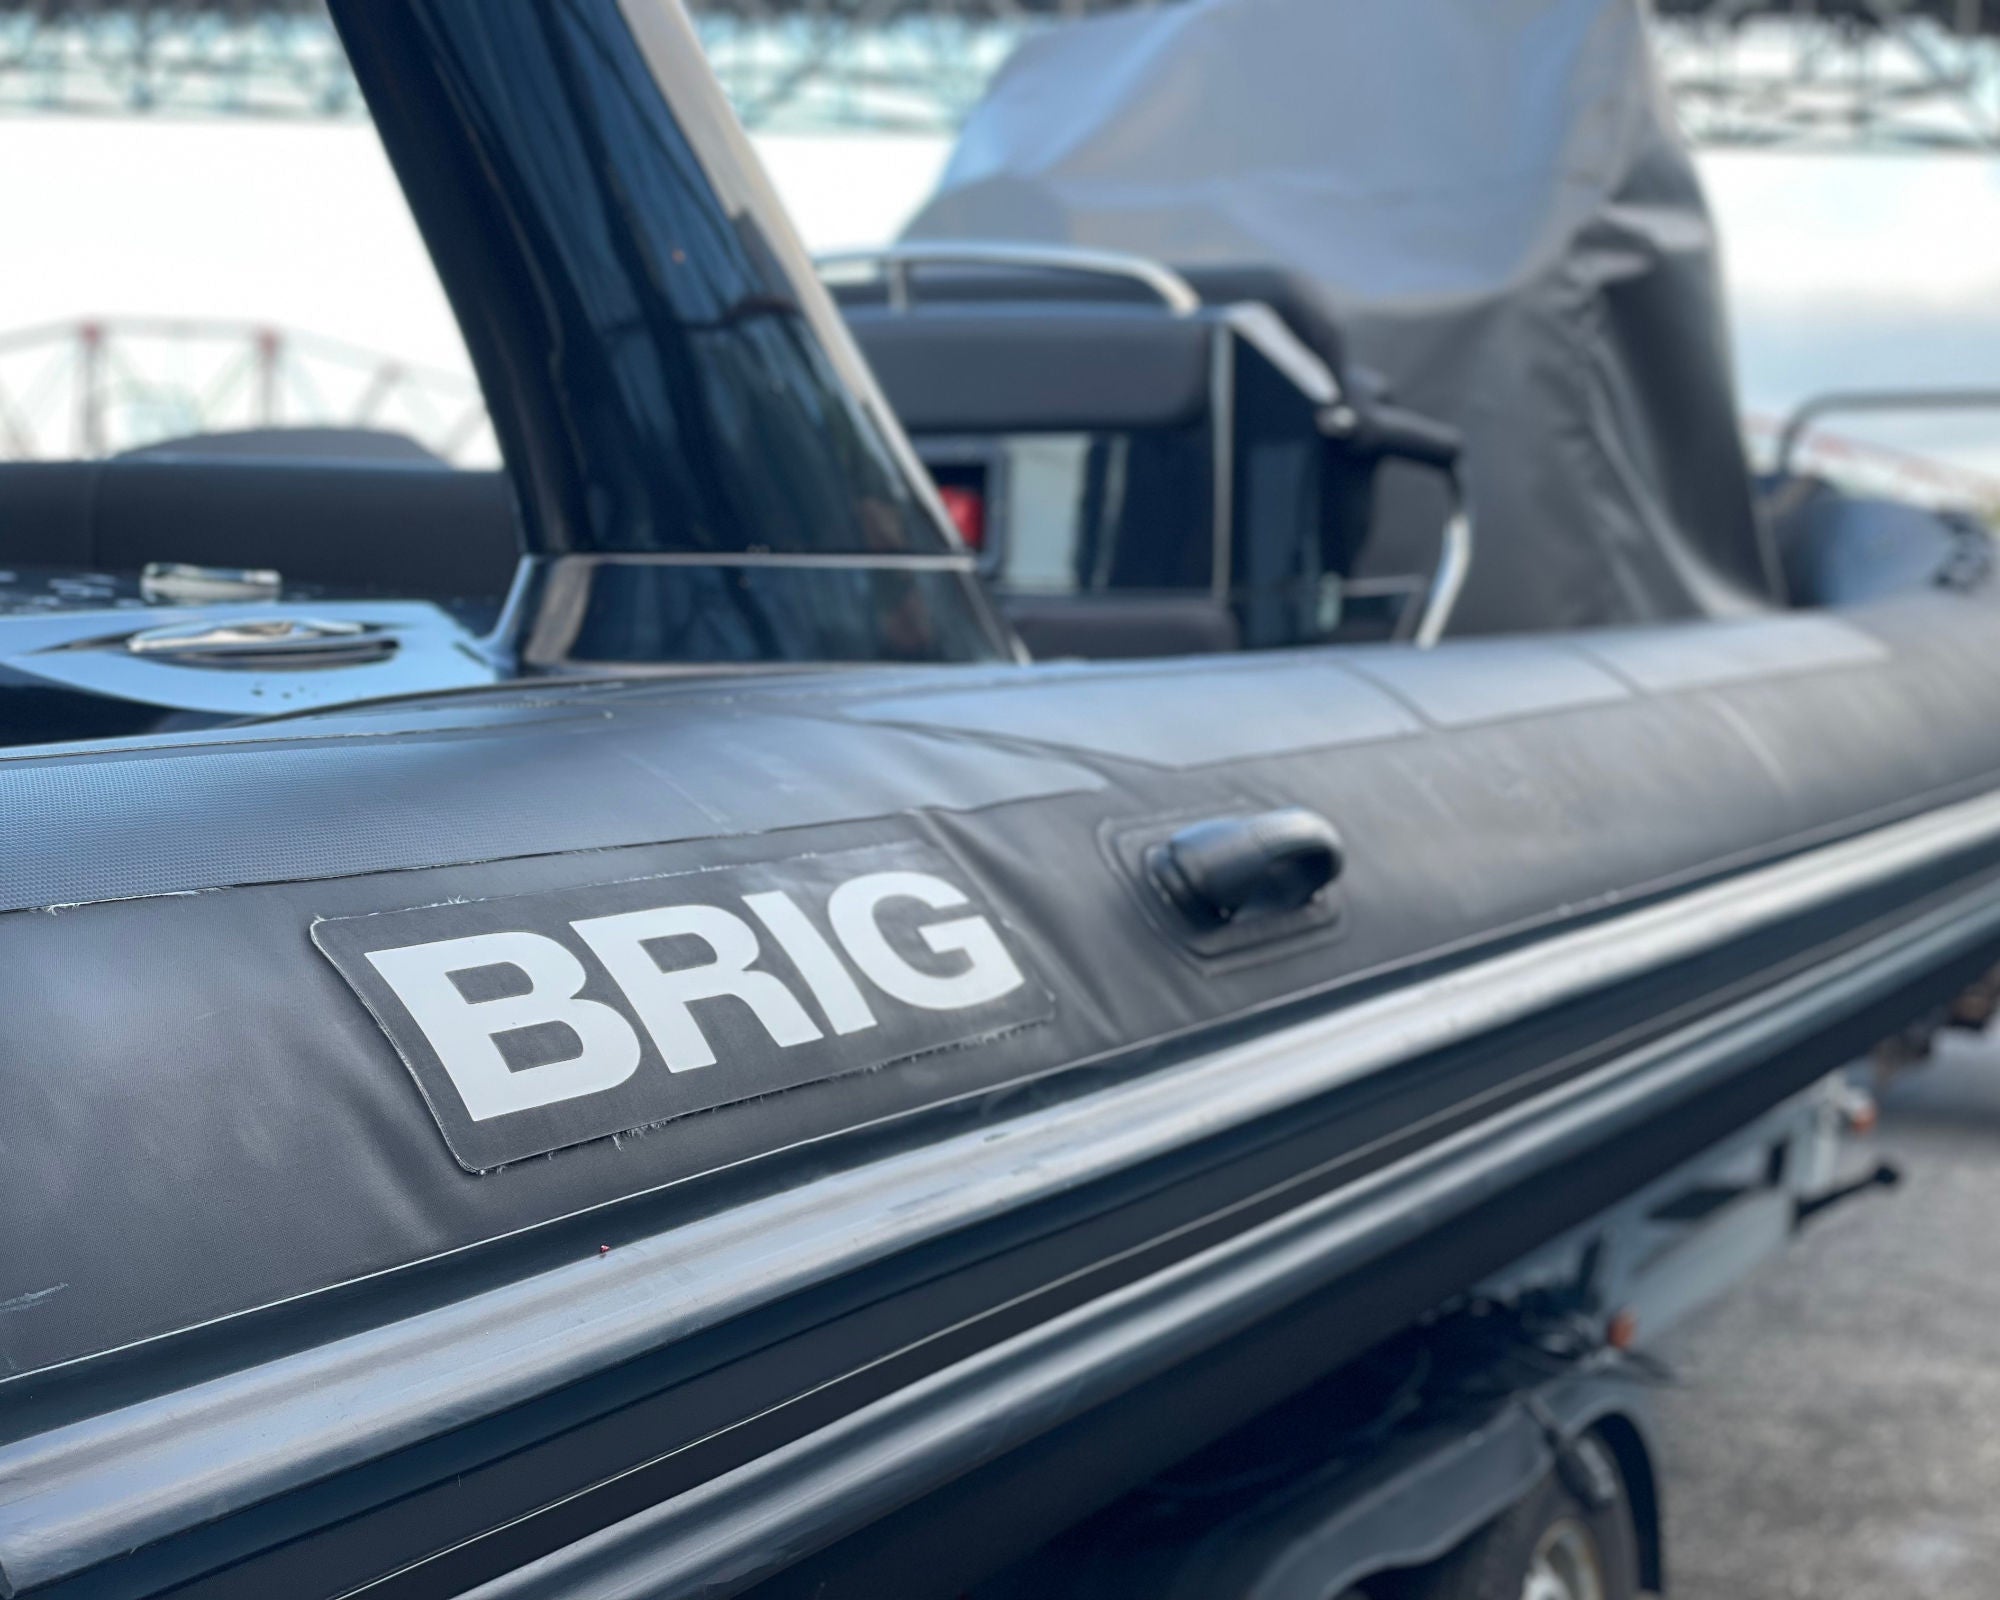 BRIG Eagle 780 RIB (2018)